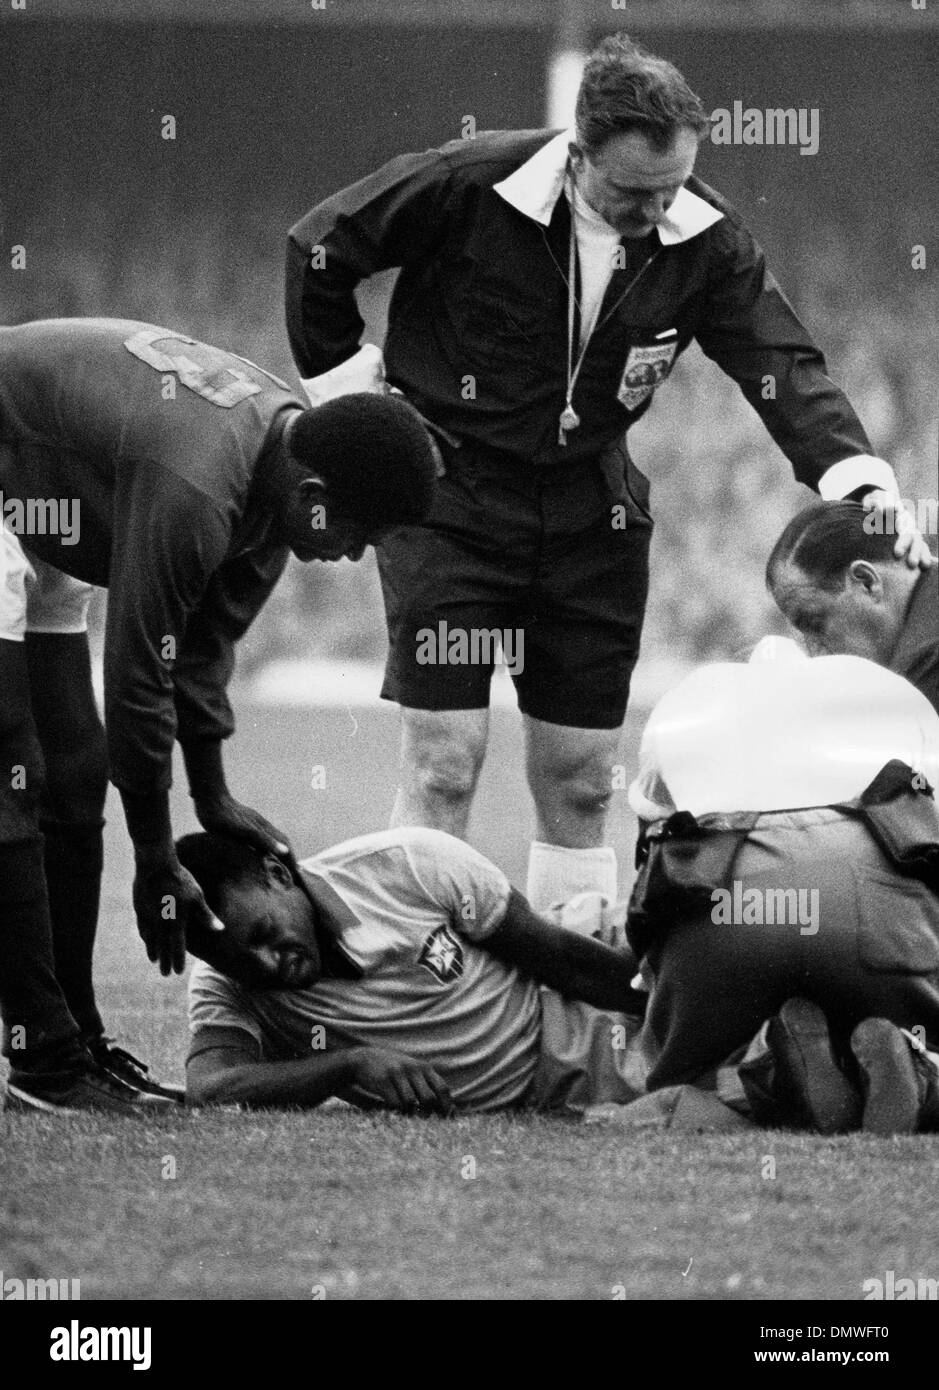 Luglio 20, 1966 - Londra, Inghilterra, Regno Unito - Brasiliano giocatore di calcio EDSON NASCIMENTO 'PELE' dopo essere stato ferito durante la Coppa del Mondo di calcio tra il Brasile e il Portogallo. (Credito Immagine: © Keystone Pictures USA/ZUMAPRESS.com) Foto Stock